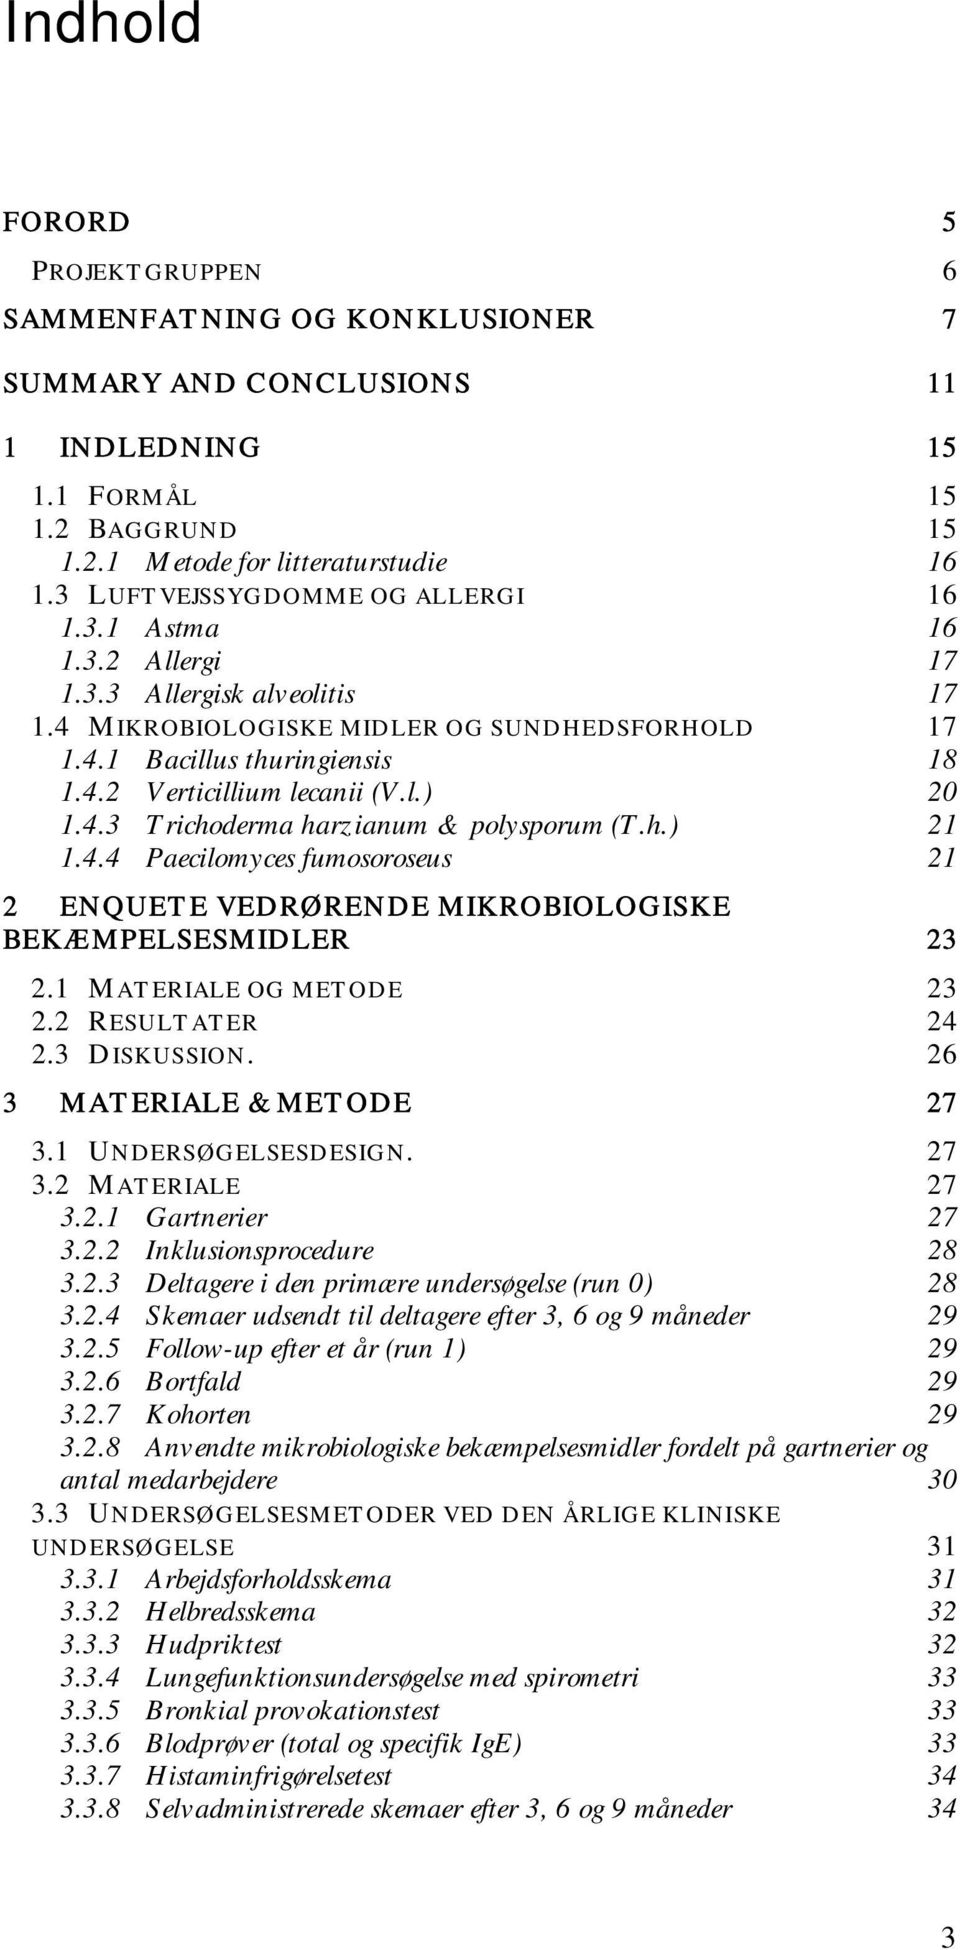 l.) 20 1.4.3 Trichoderma harzianum & polysporum (T.h.) 21 1.4.4 Paecilomyces fumosoroseus 21 2 ENQUETE VEDRØRENDE MIKROBIOLOGISKE BEKÆMPELSESMIDLER 23 2.1 MATERIALE OG METODE 23 2.2 RESULTATER 24 2.